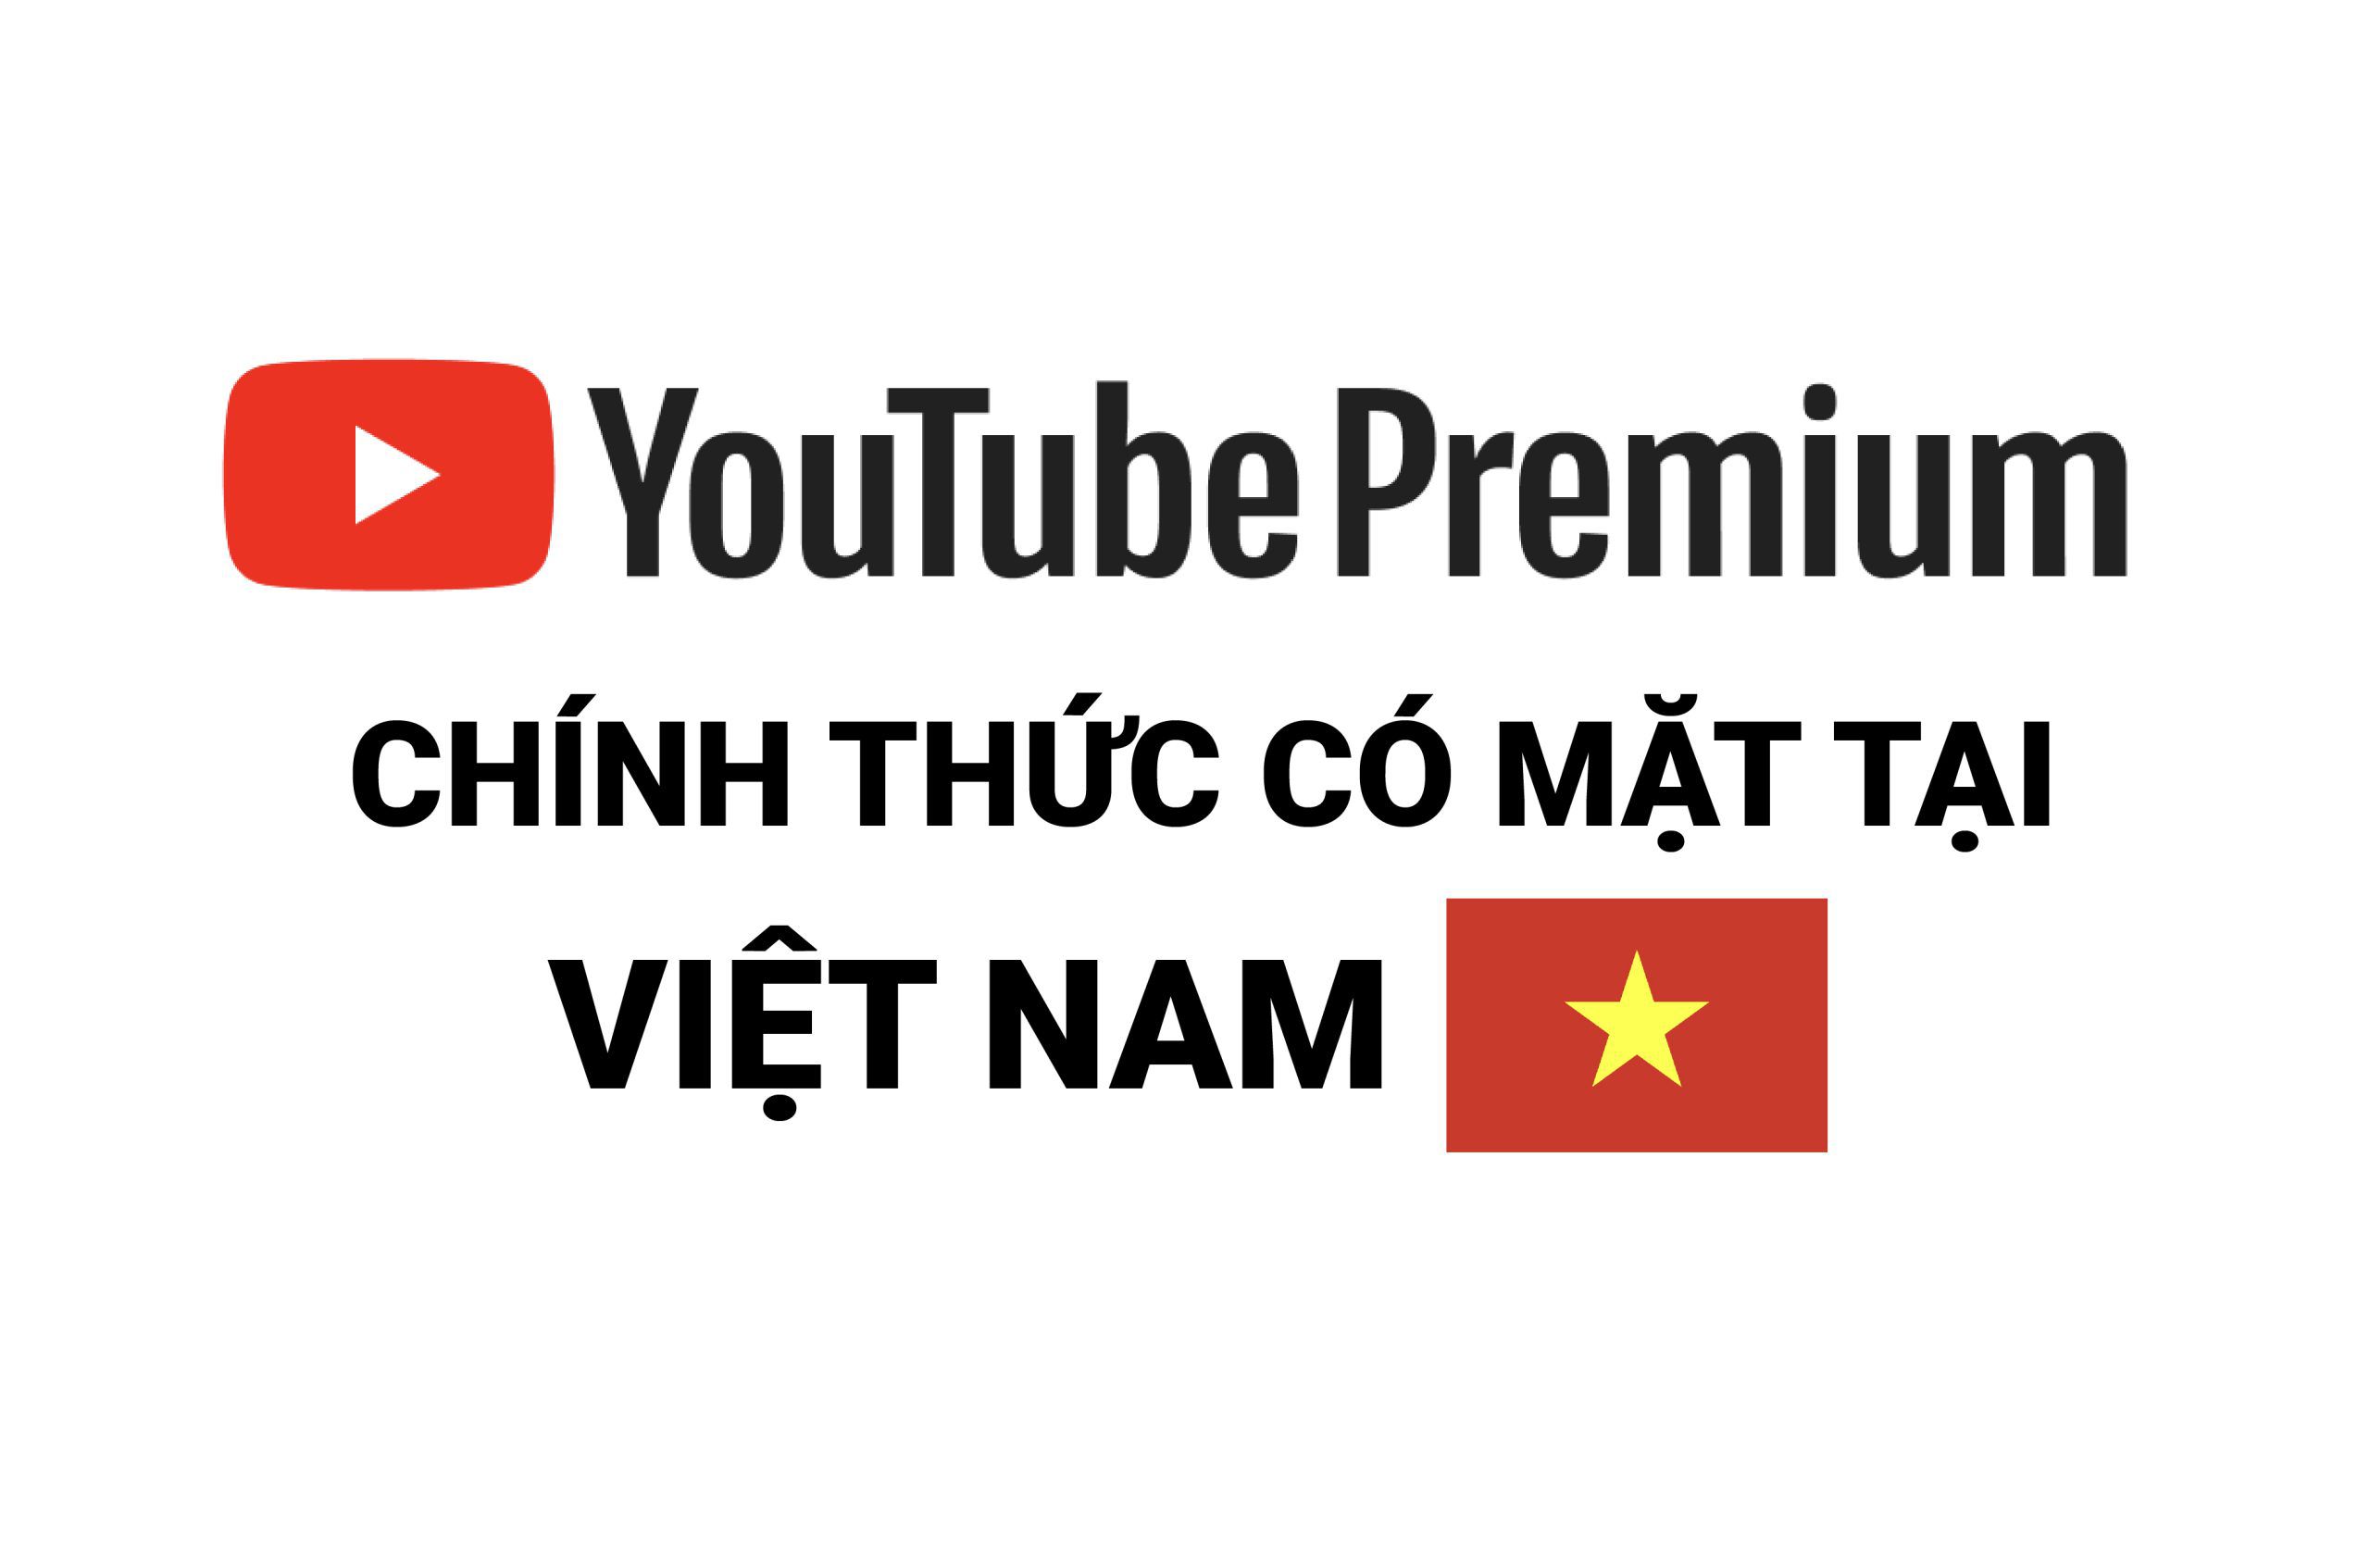 youtube premium chính thức có mặt tại VN